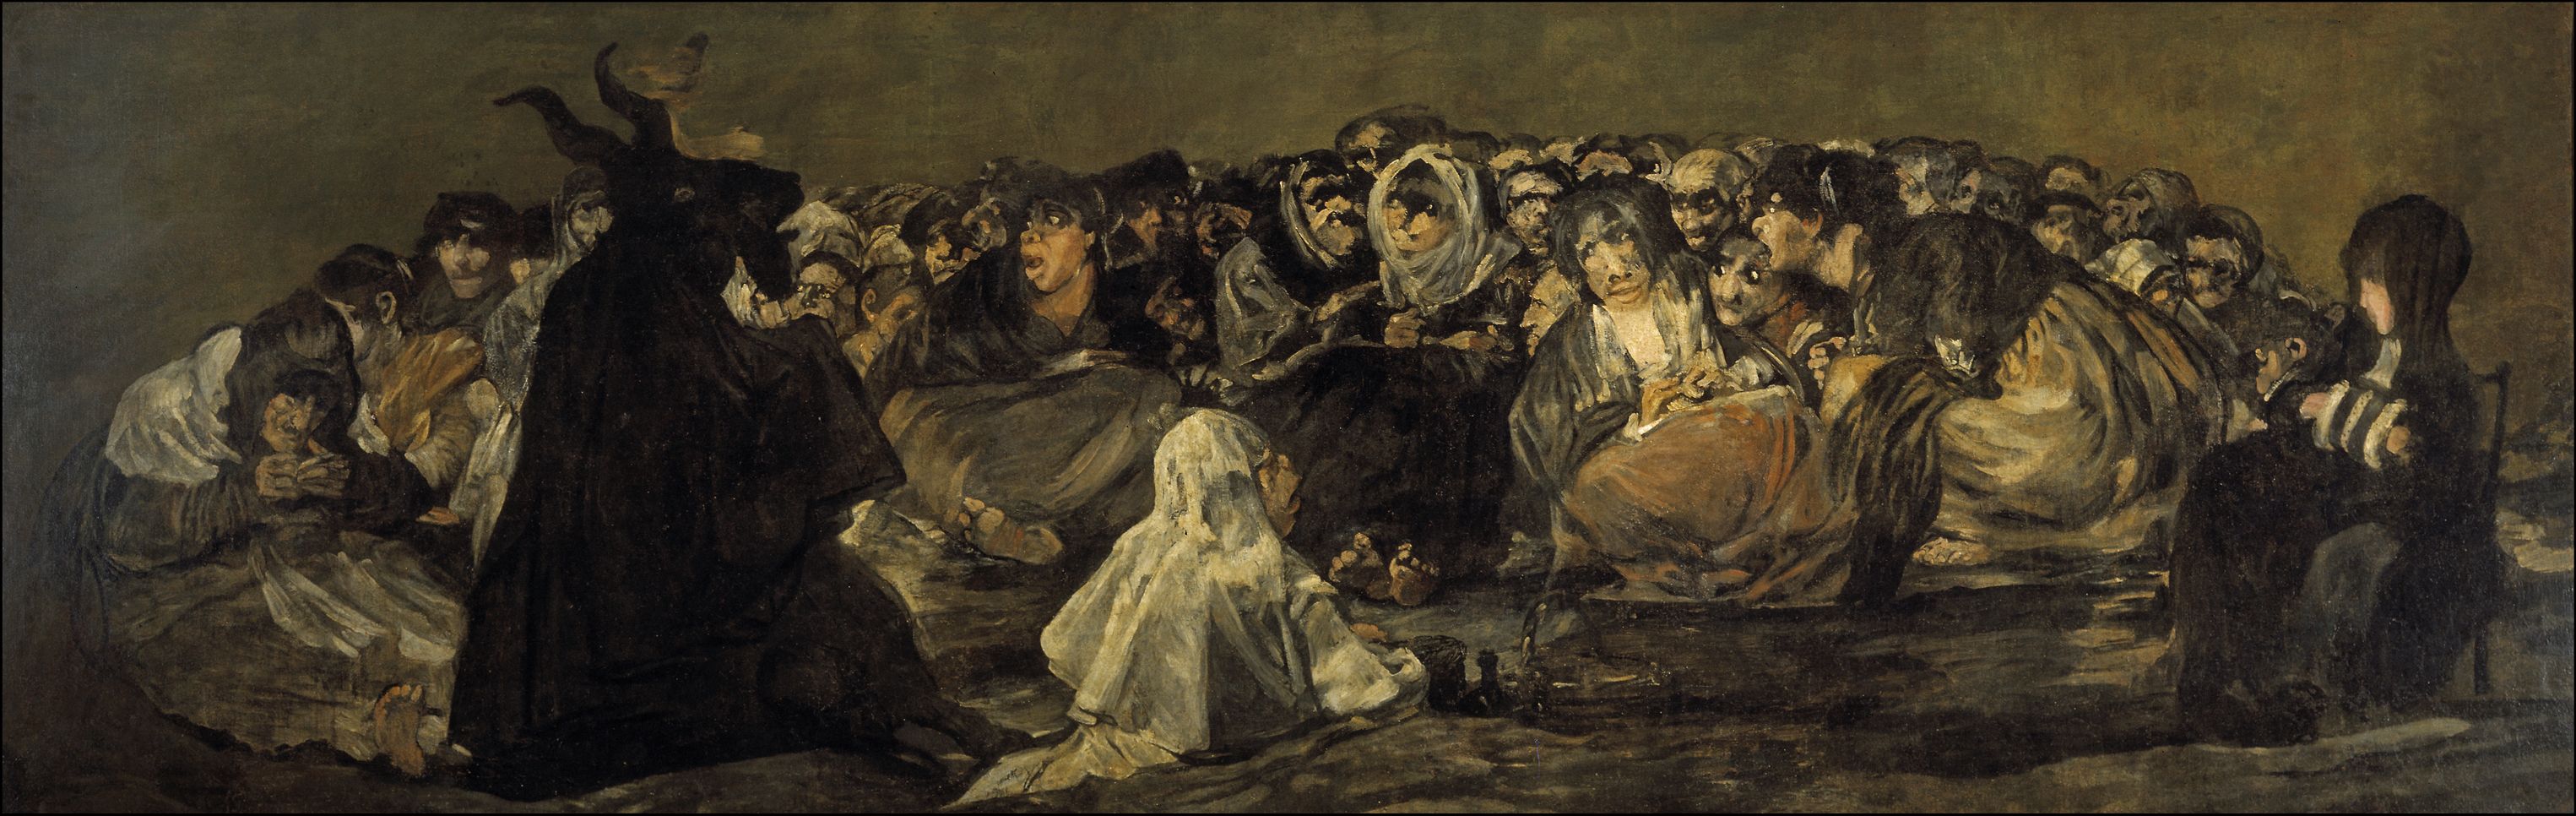 'El aquelarre' de Francisco de Goya 